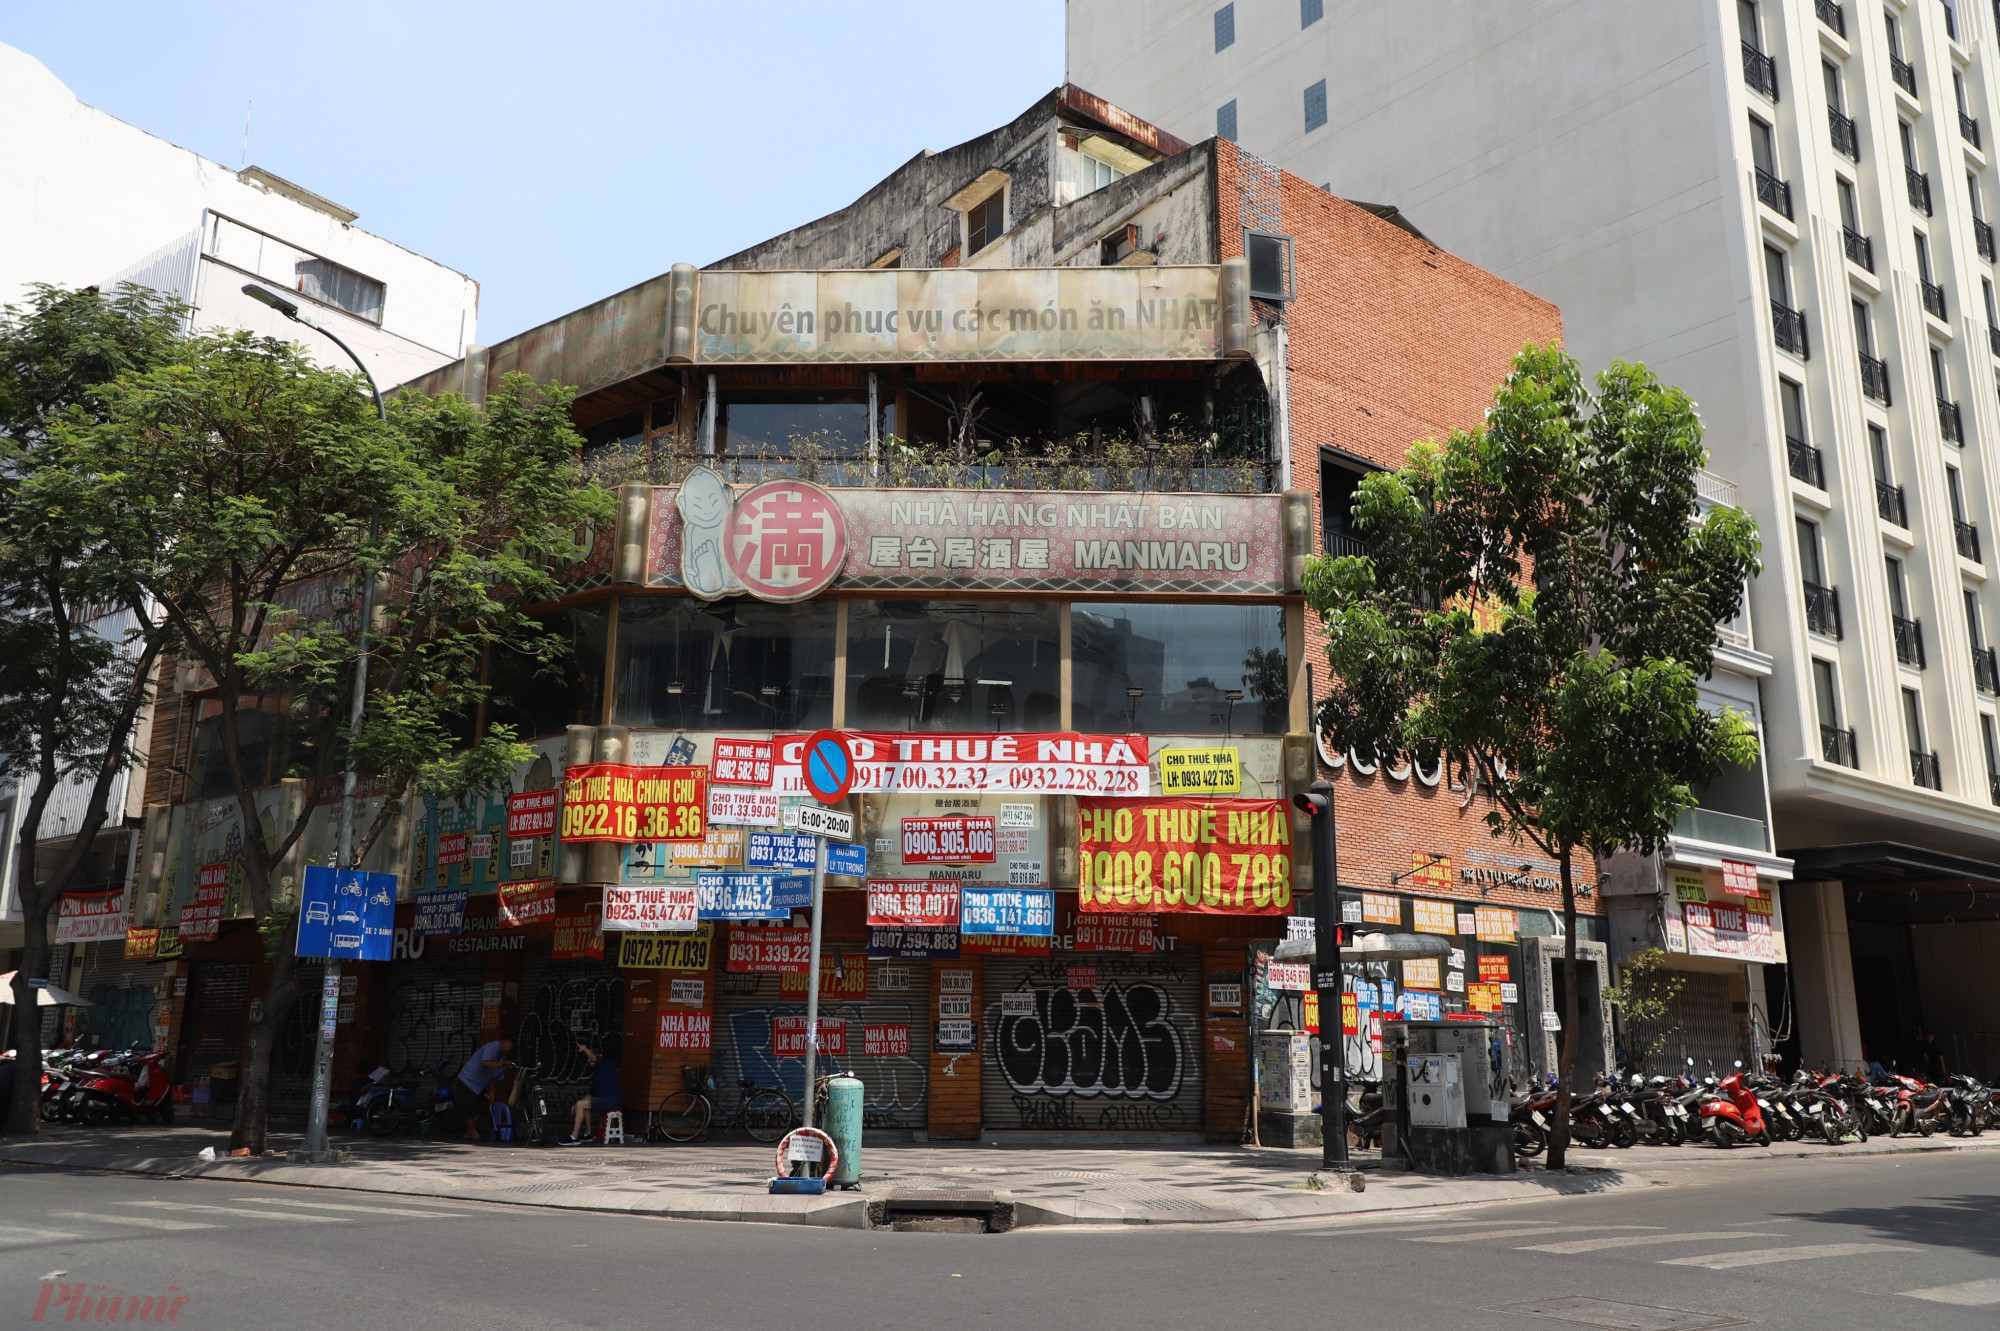 Mặt bằng ngay ngã 4 Lý Tự Trọng - Trương Định (Q.1, TP.HCM) vốn là một nhà hàng Nhật Bản kinh doanh nhiều năm đóng cửa suốt thời gian dài